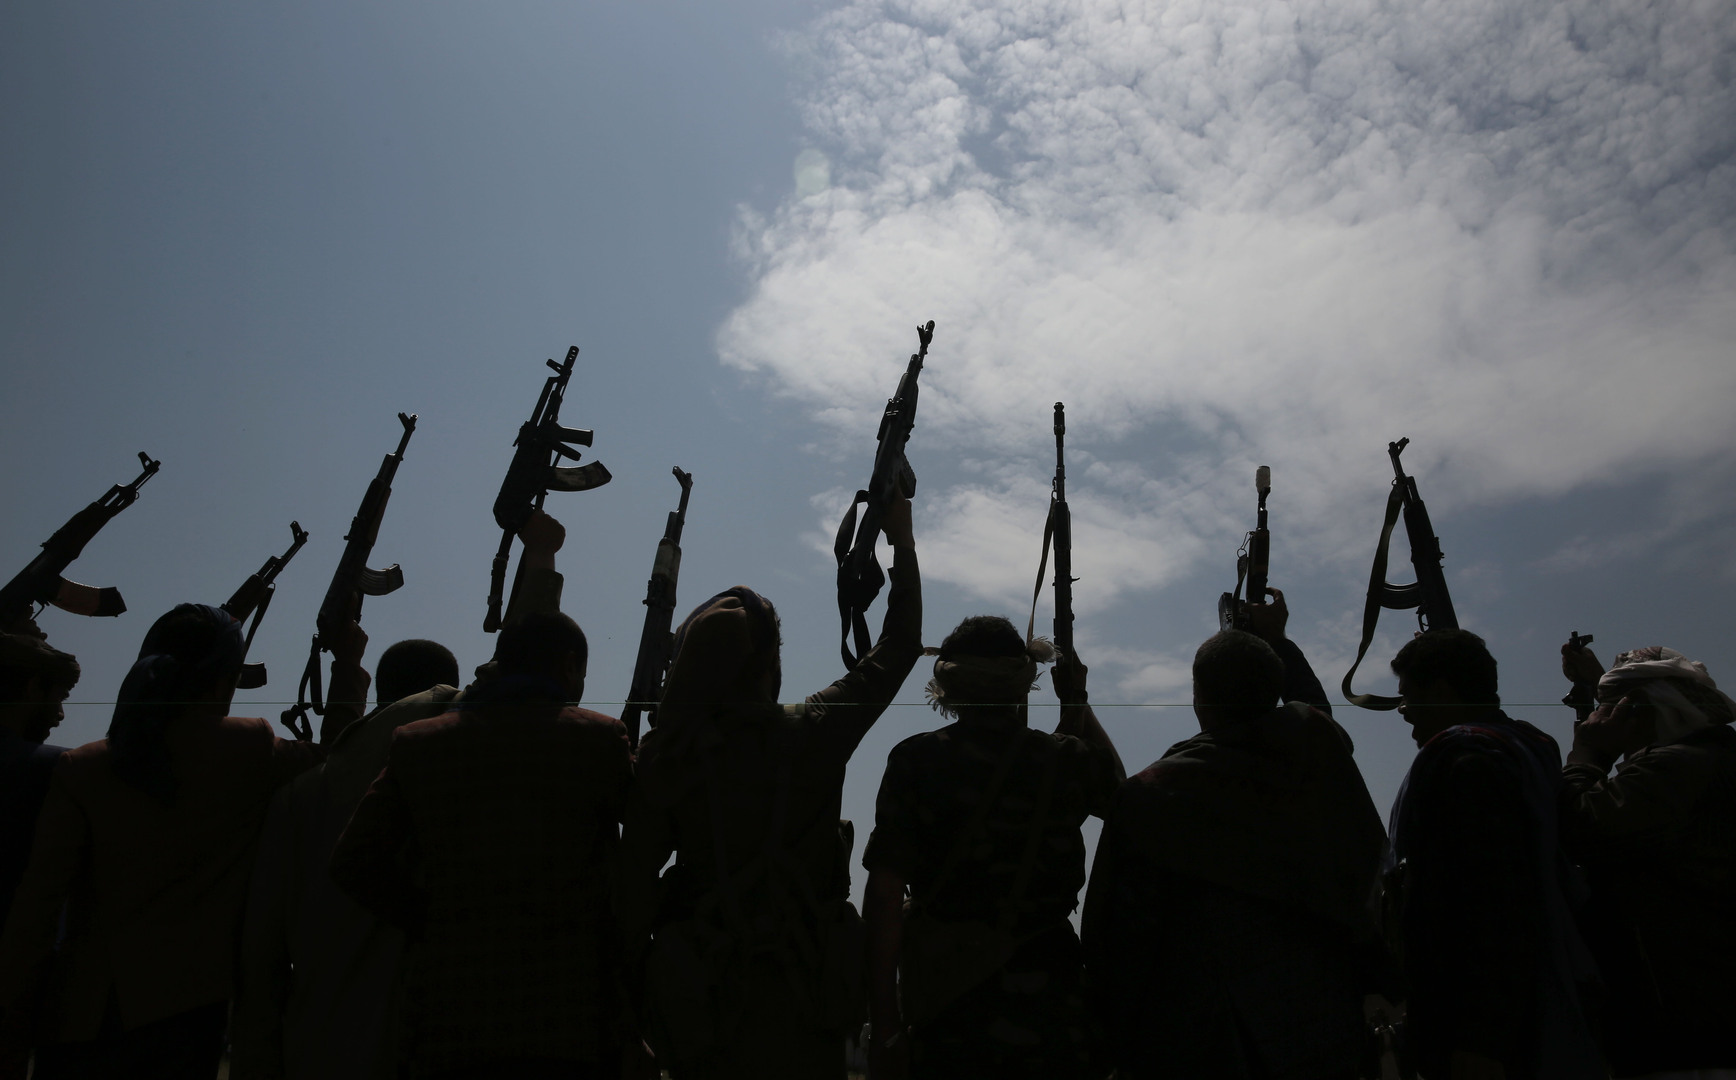 التحالف العربي يعلن شن الحوثيين هجوما جديدا على مطار أبها